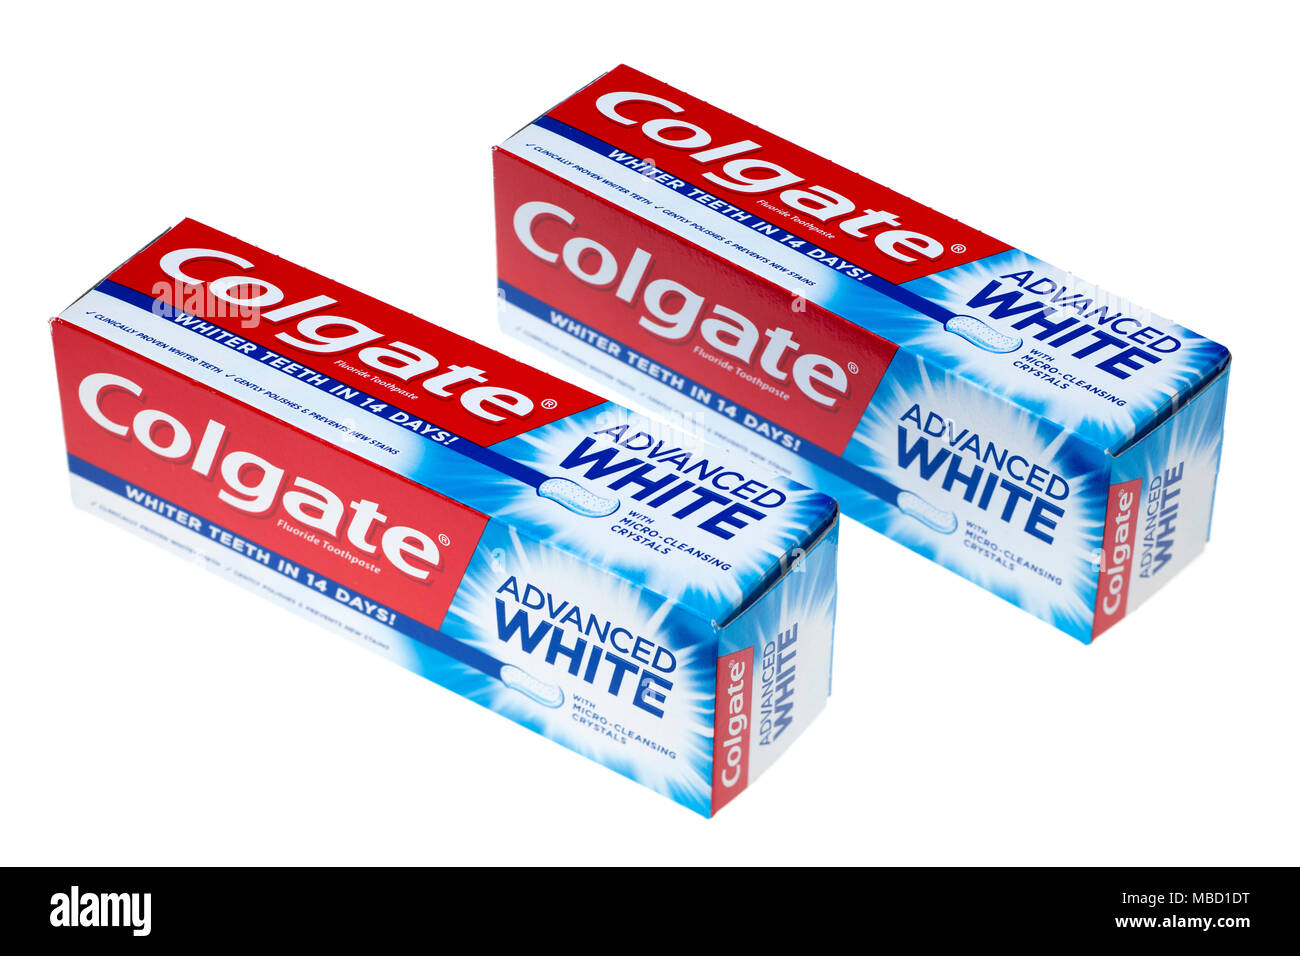 Colgate erweiterte weiße Zahnpasta Stockfoto